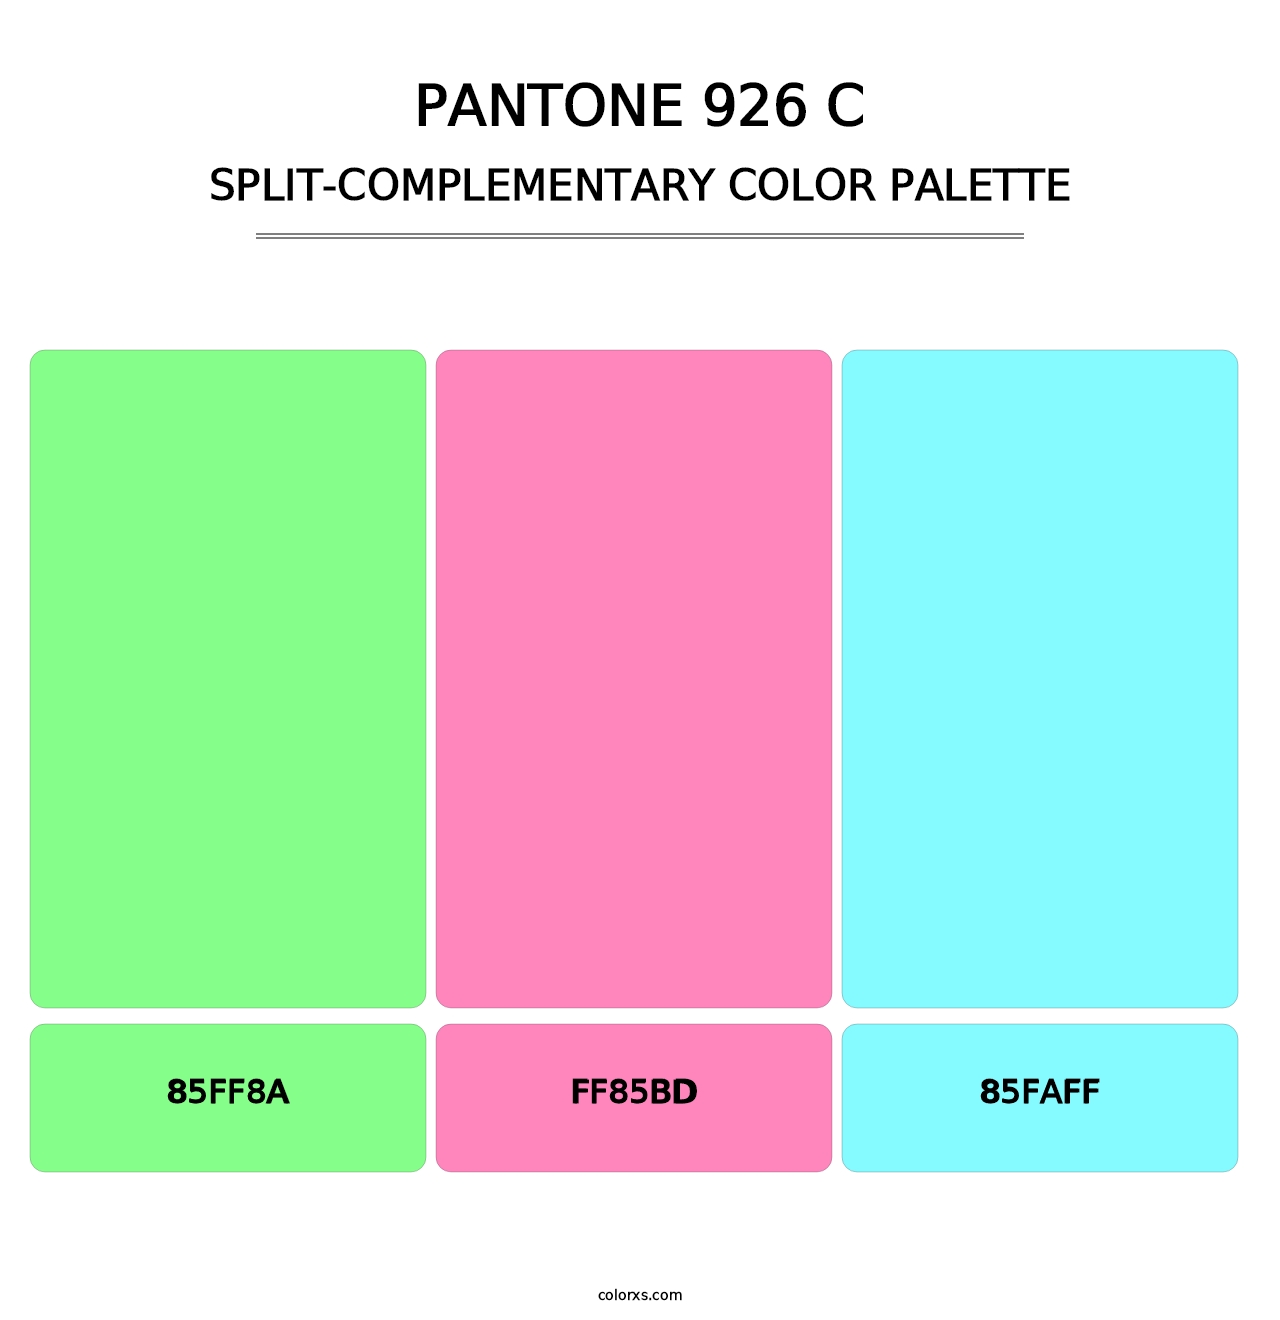 PANTONE 926 C - Split-Complementary Color Palette